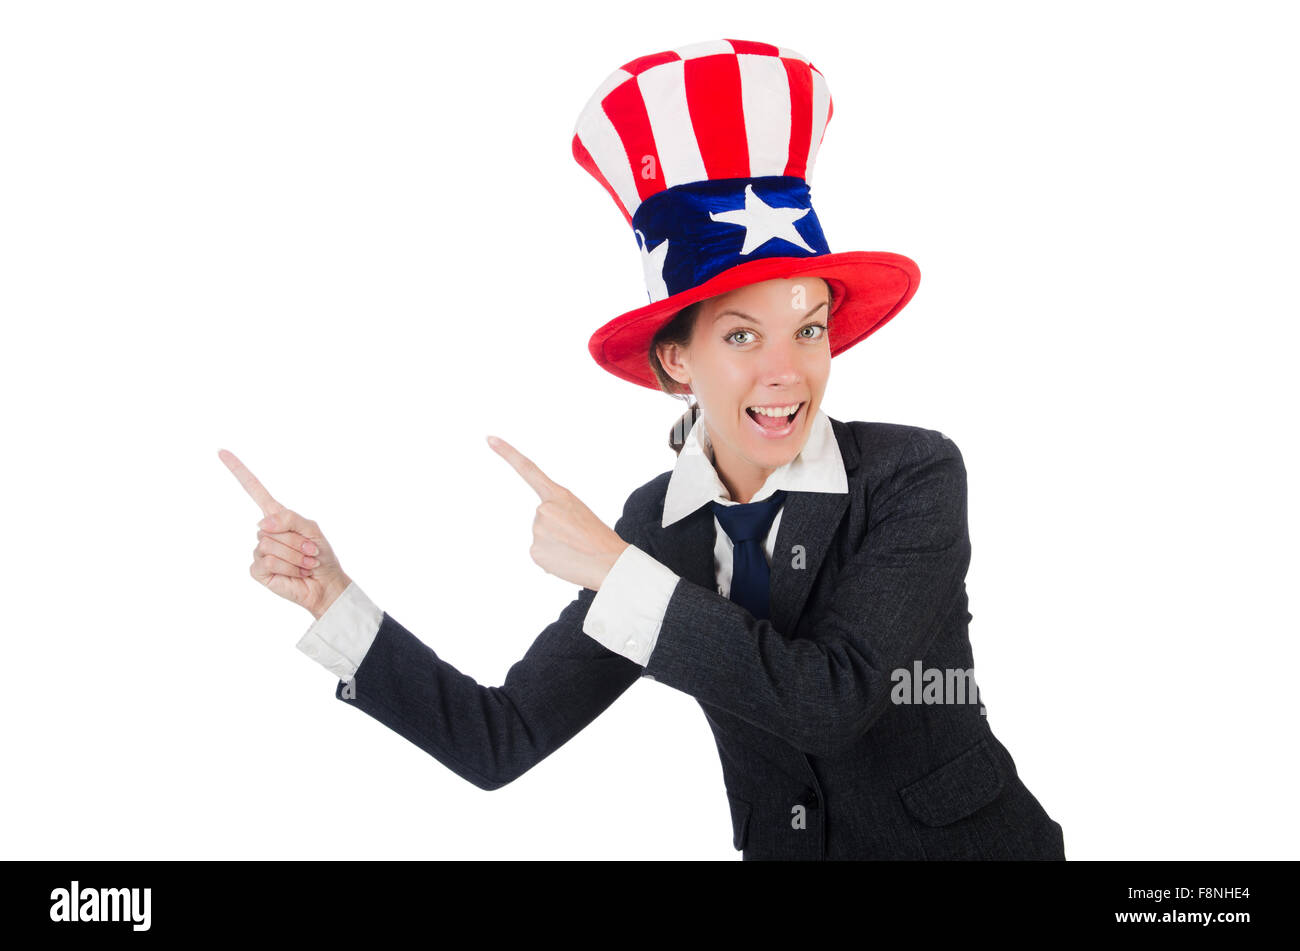 Американец в шляпе показывает пальцем. Человек в шляпе раскрывает руки. Мел показал шляпу